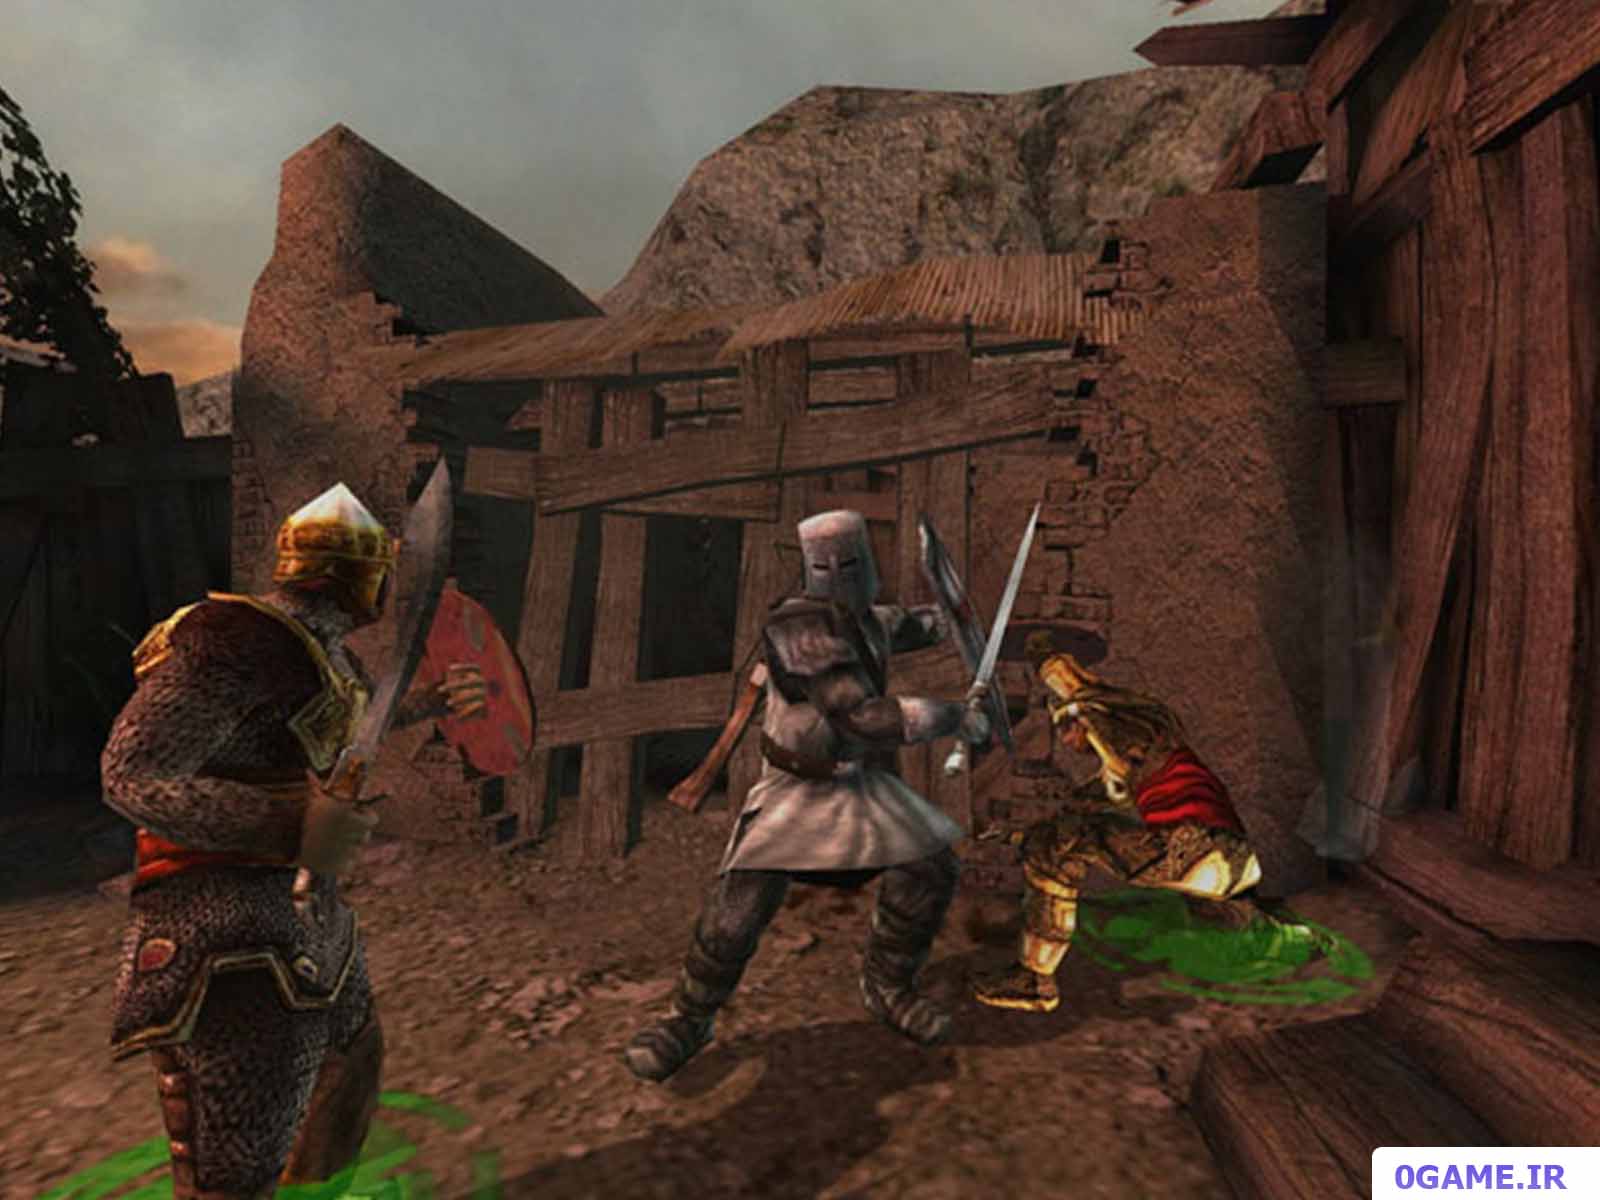 دانلود بازی شوالیه های معبد 2 (Knights of the Temple II) نسخه کامل برای کامپیوتر